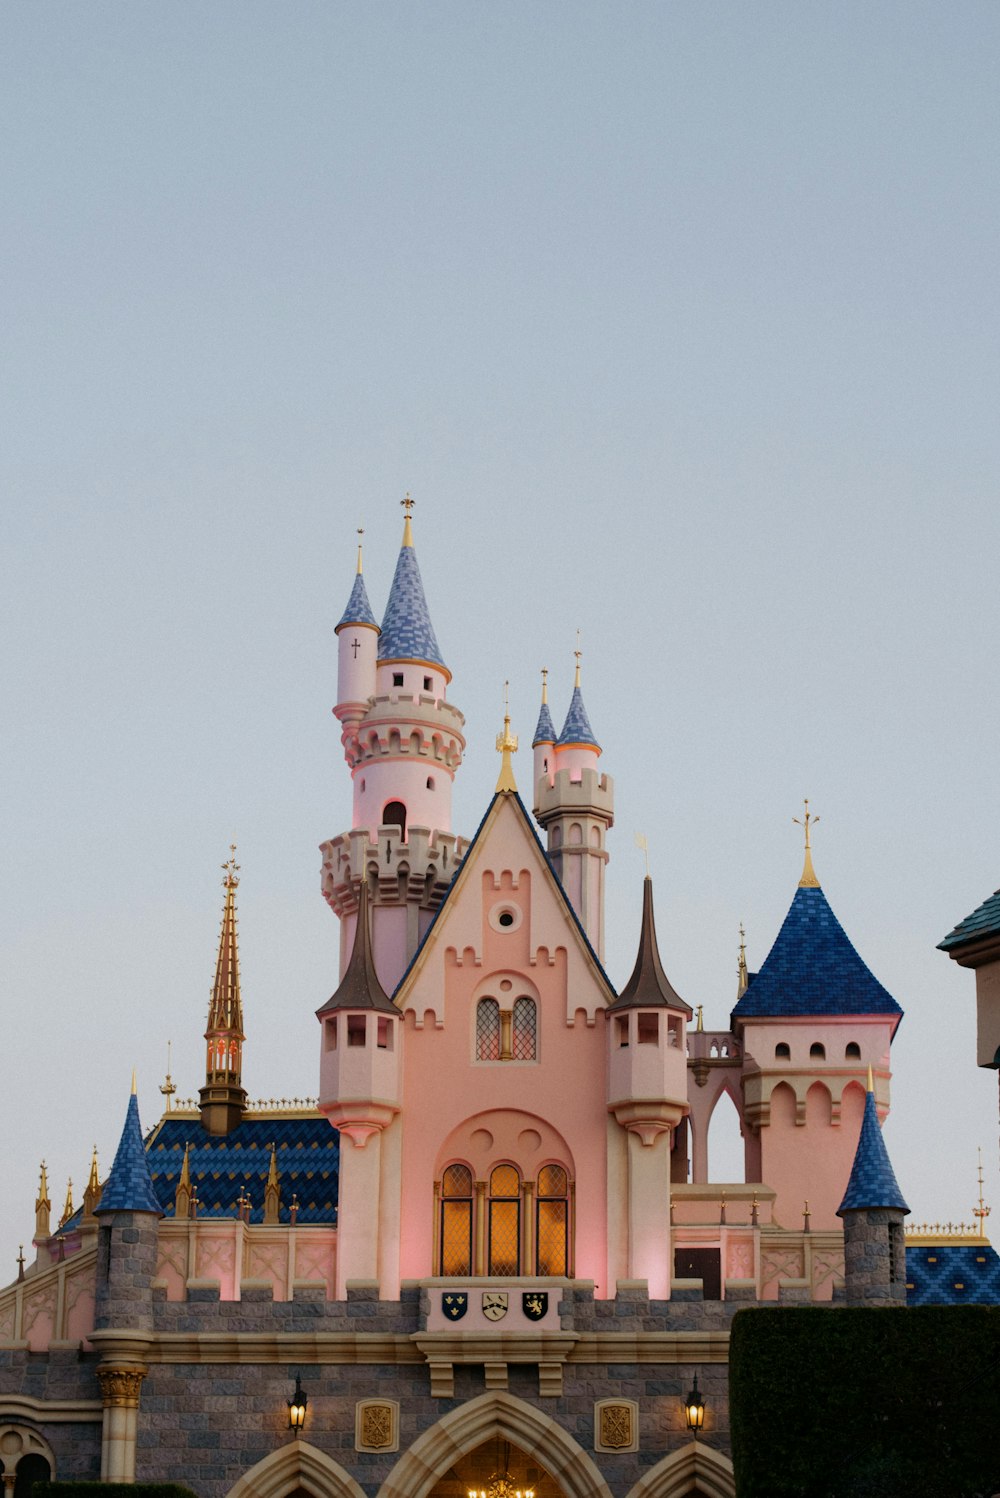 Ein großes rosa Schloss mit einer Uhr an der Seite